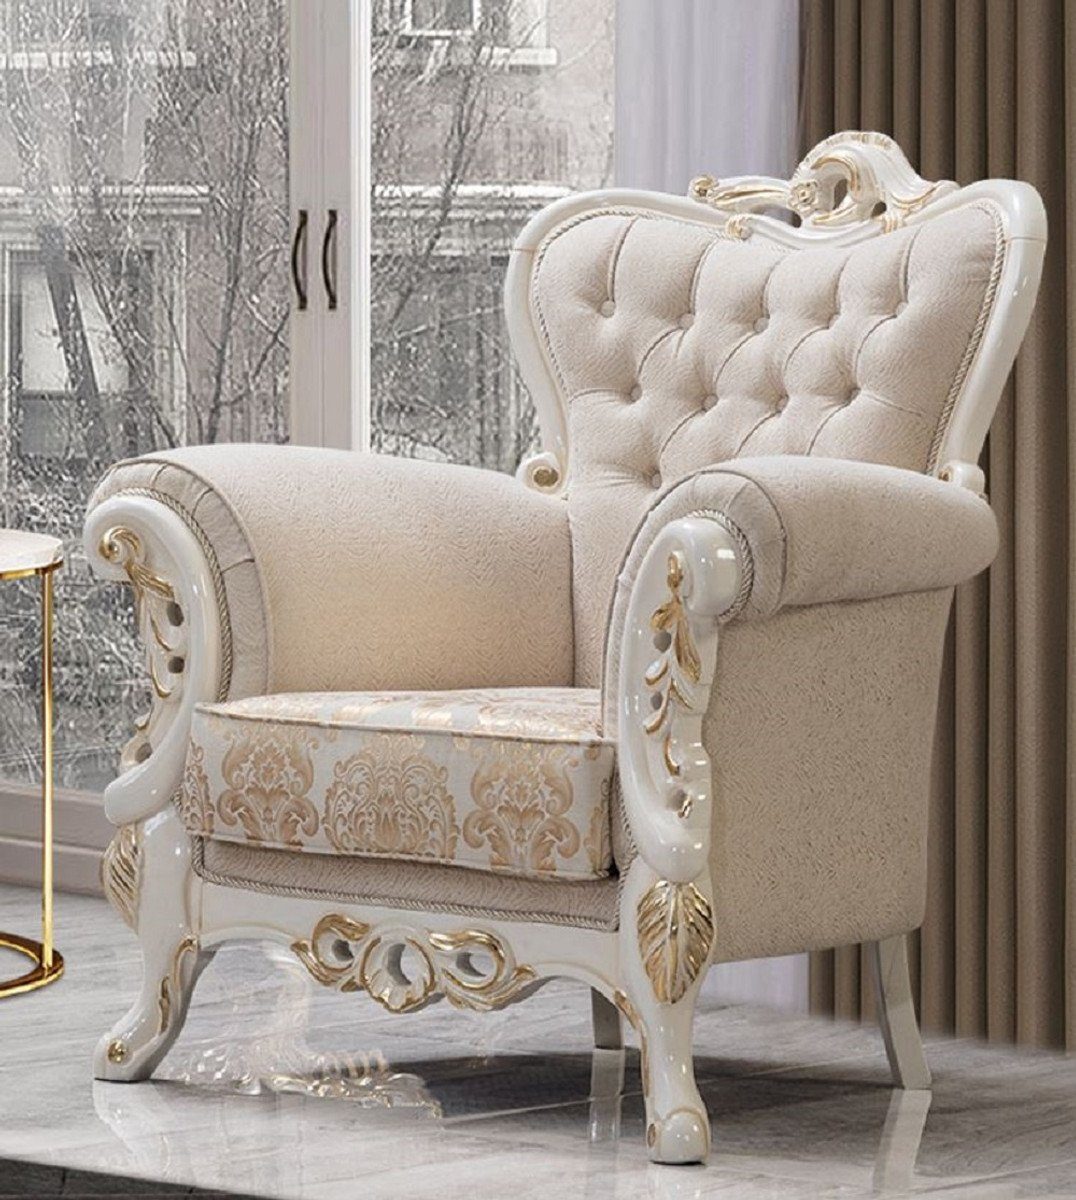 Casa Padrino Sessel Casa Padrino Luxus Barock Sessel Weiß / Gold - Prunkvoller Wohnzimmer Sessel mit elegantem Muster - Luxus Wohnzimmer Möbel im Barockstil - Barock Möbel - Barock Einrichtung | Einzelsessel